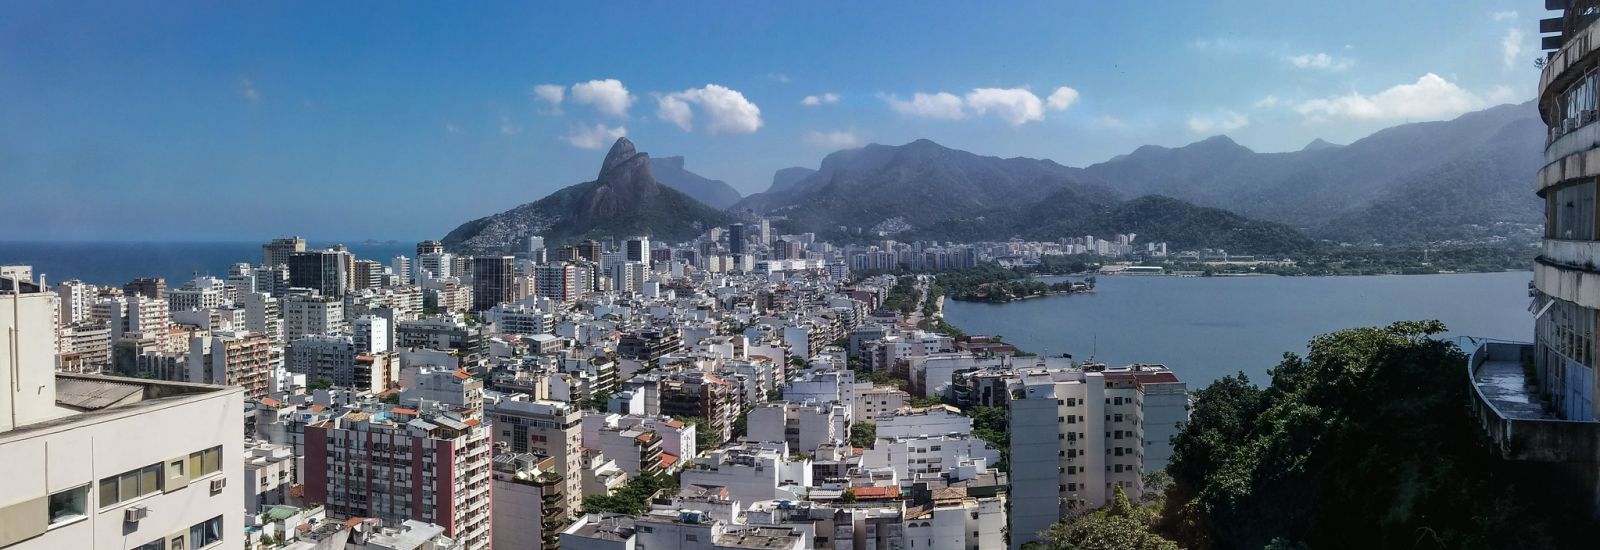 View over Rio de Janeiro, looking towards mountains